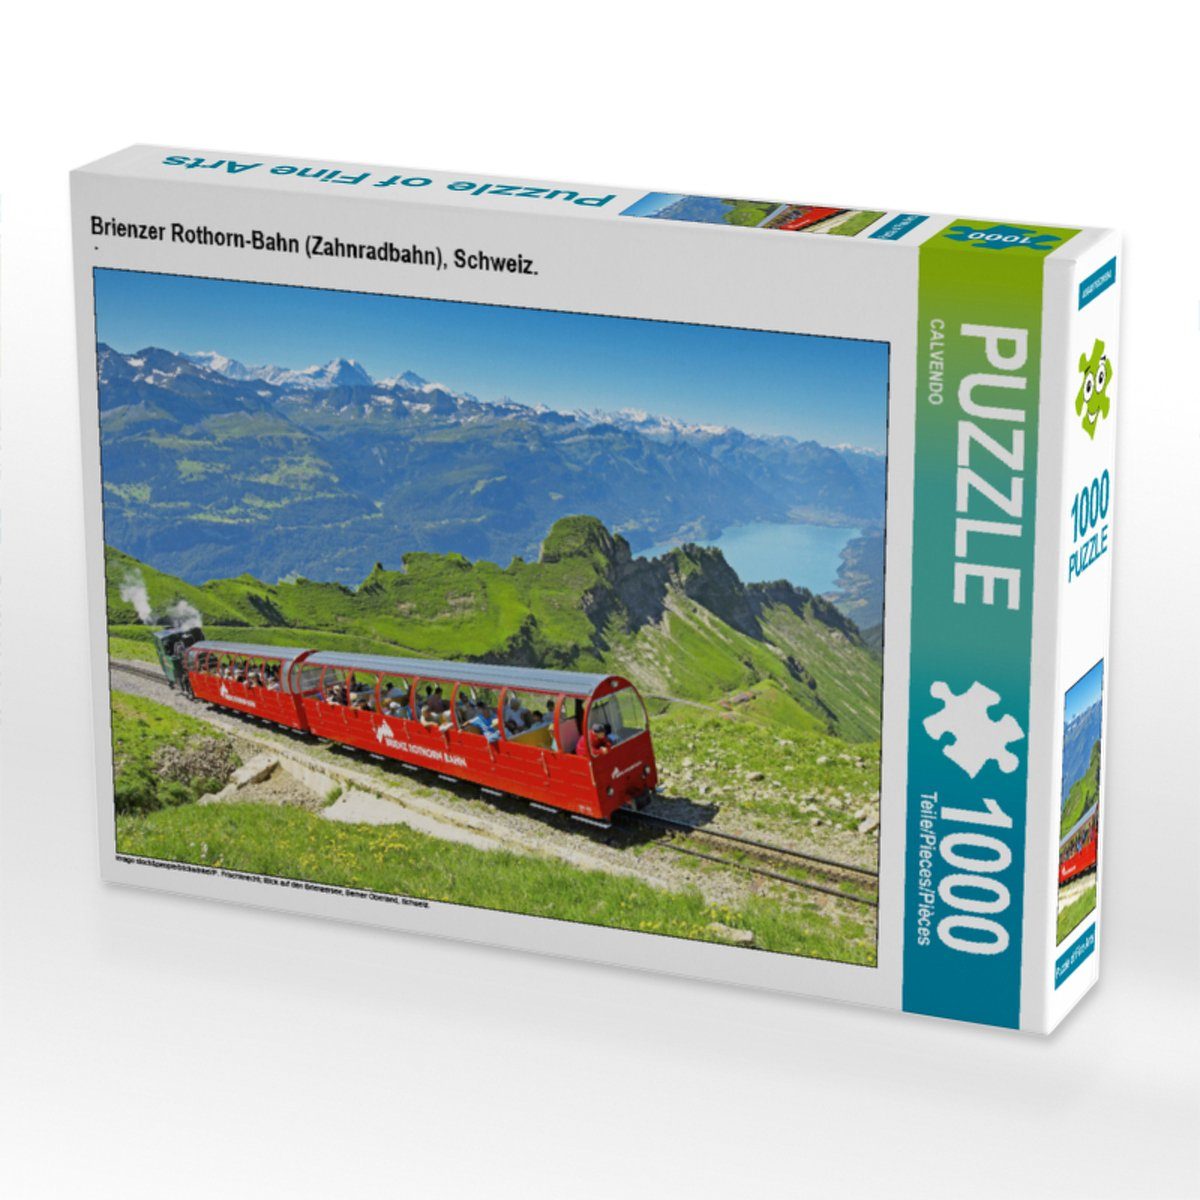 Teile 64 CALVENDO CALVENDO Lege-Größe Bild Schweiz. von Puzzleteile x cm 1000 Verlag, CALVENDO Puzzle Brienzer Rothorn-Bahn Puzzle 1000 48 Foto-Puzzle (Zahnradbahn),